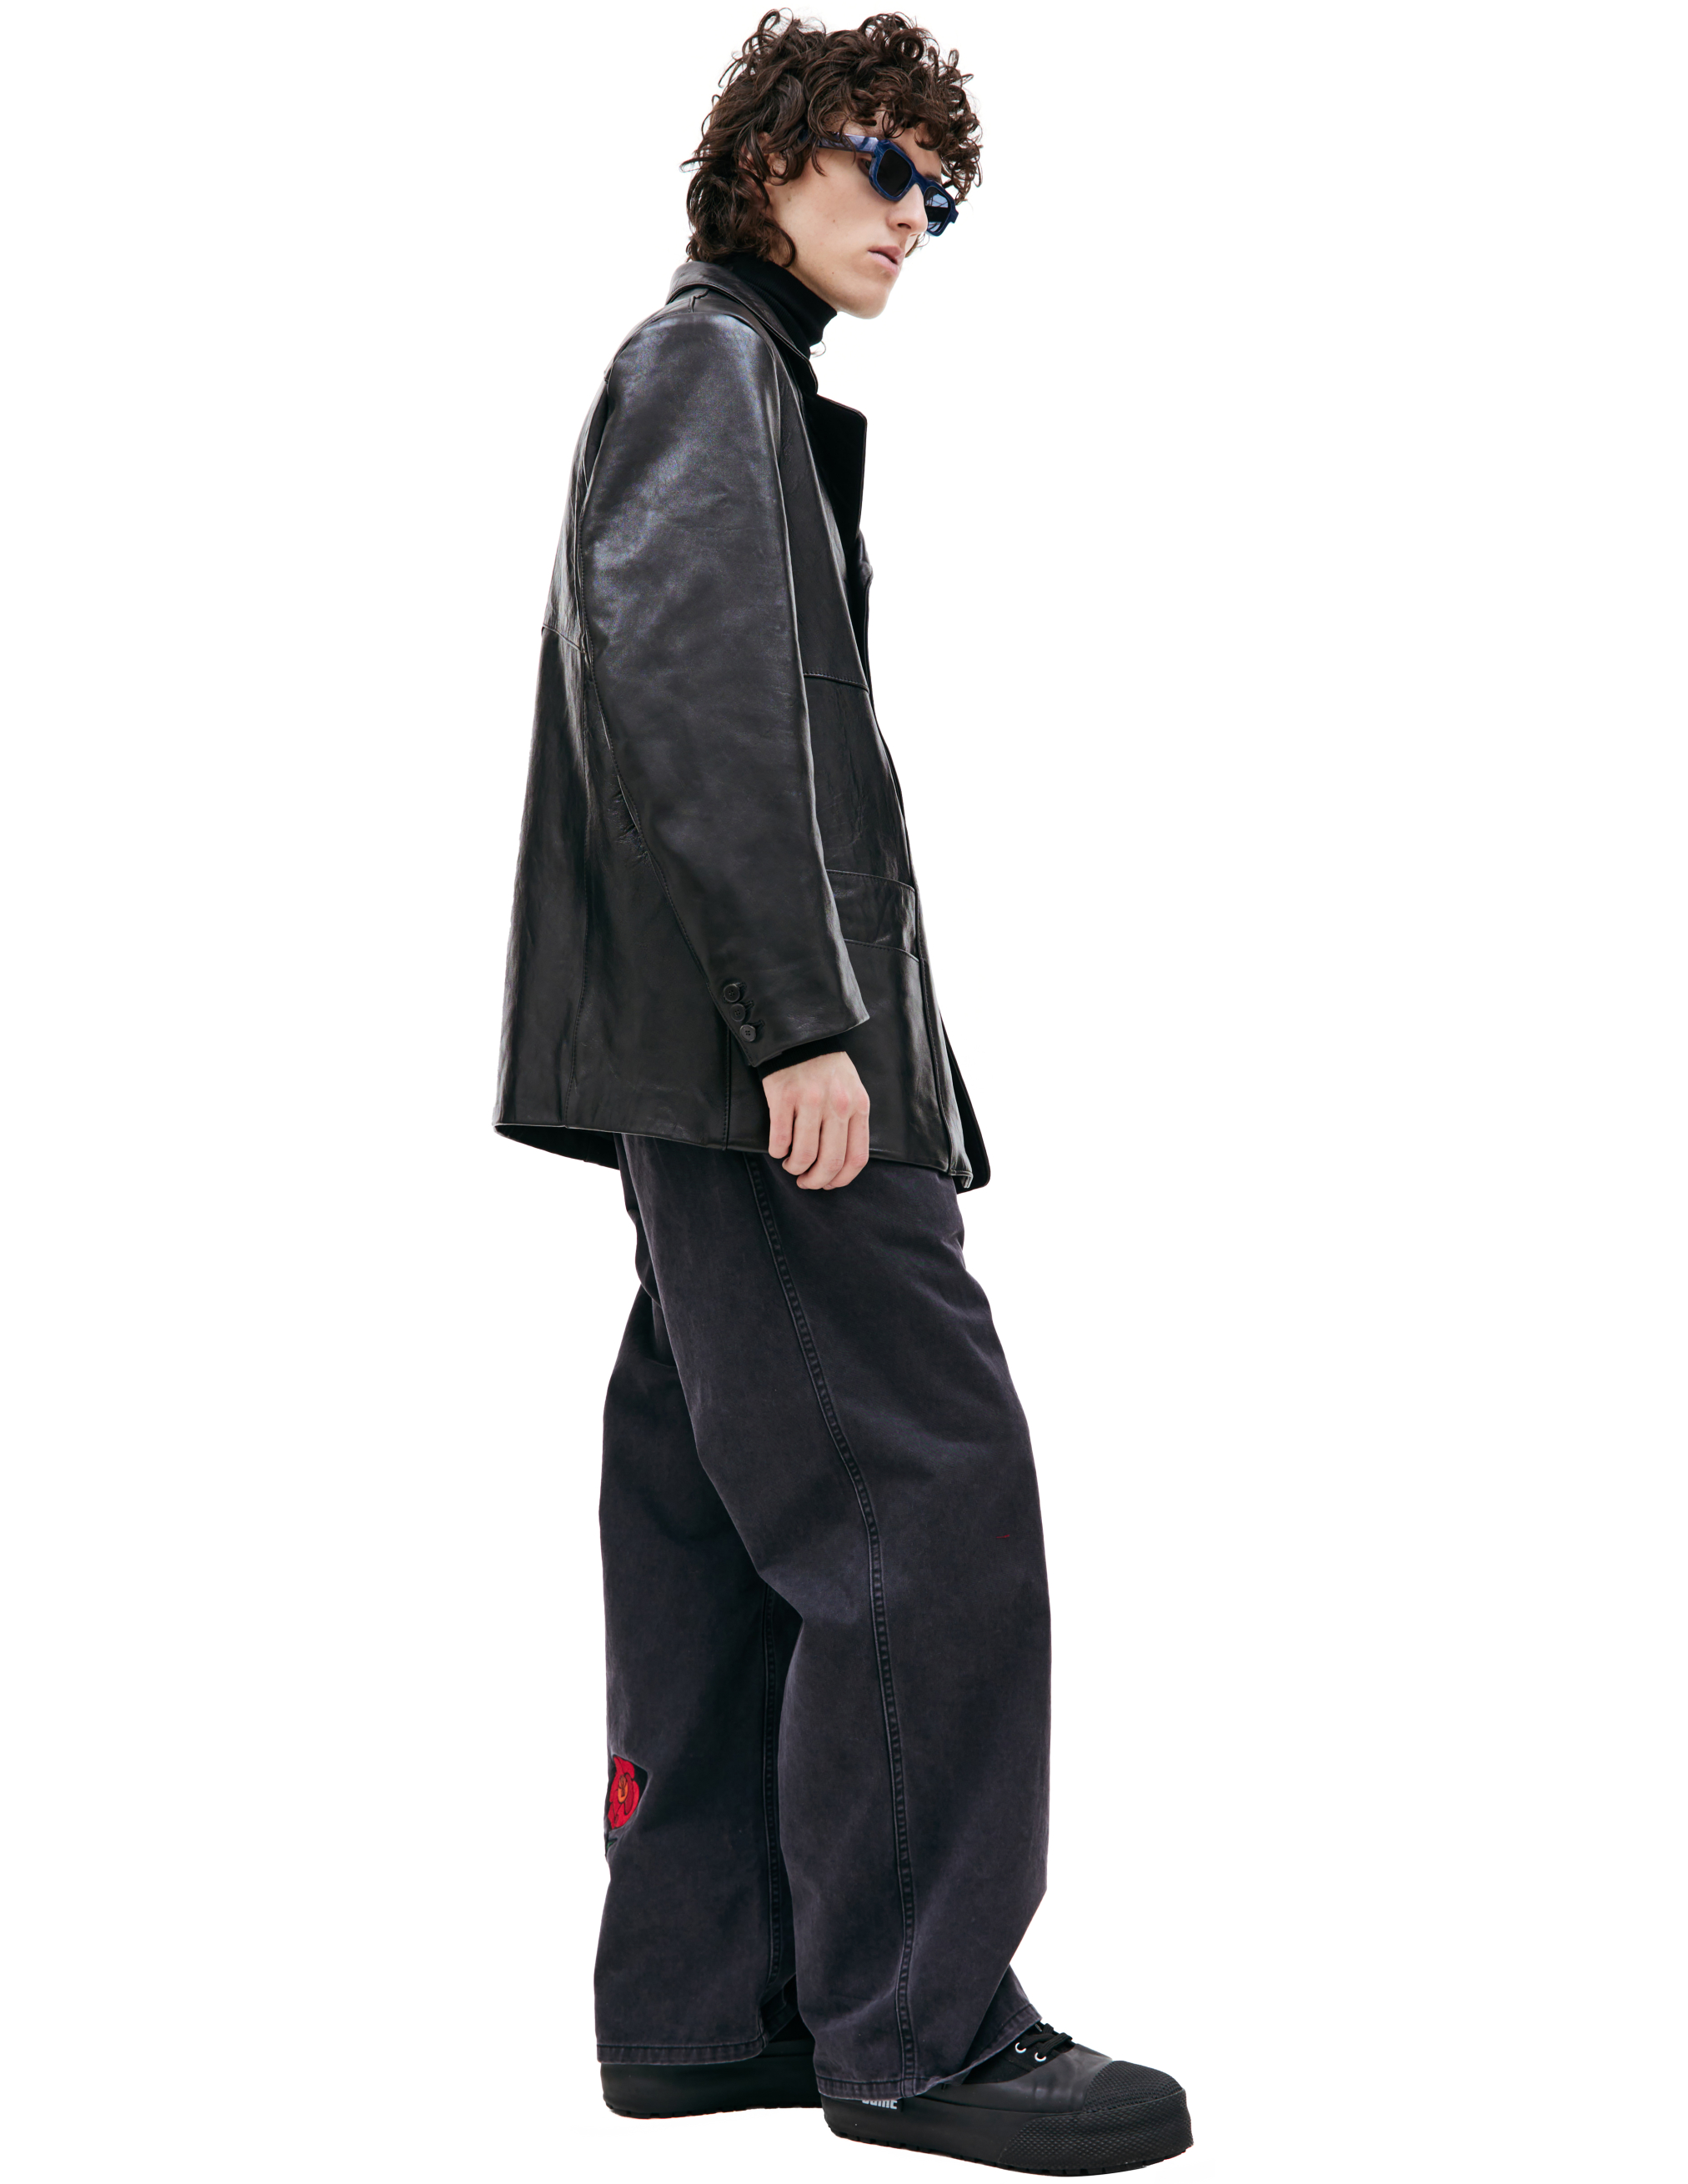 Черный кожаный пиджак Enfants Riches Deprimes 030-405, размер L;XL - фото 2